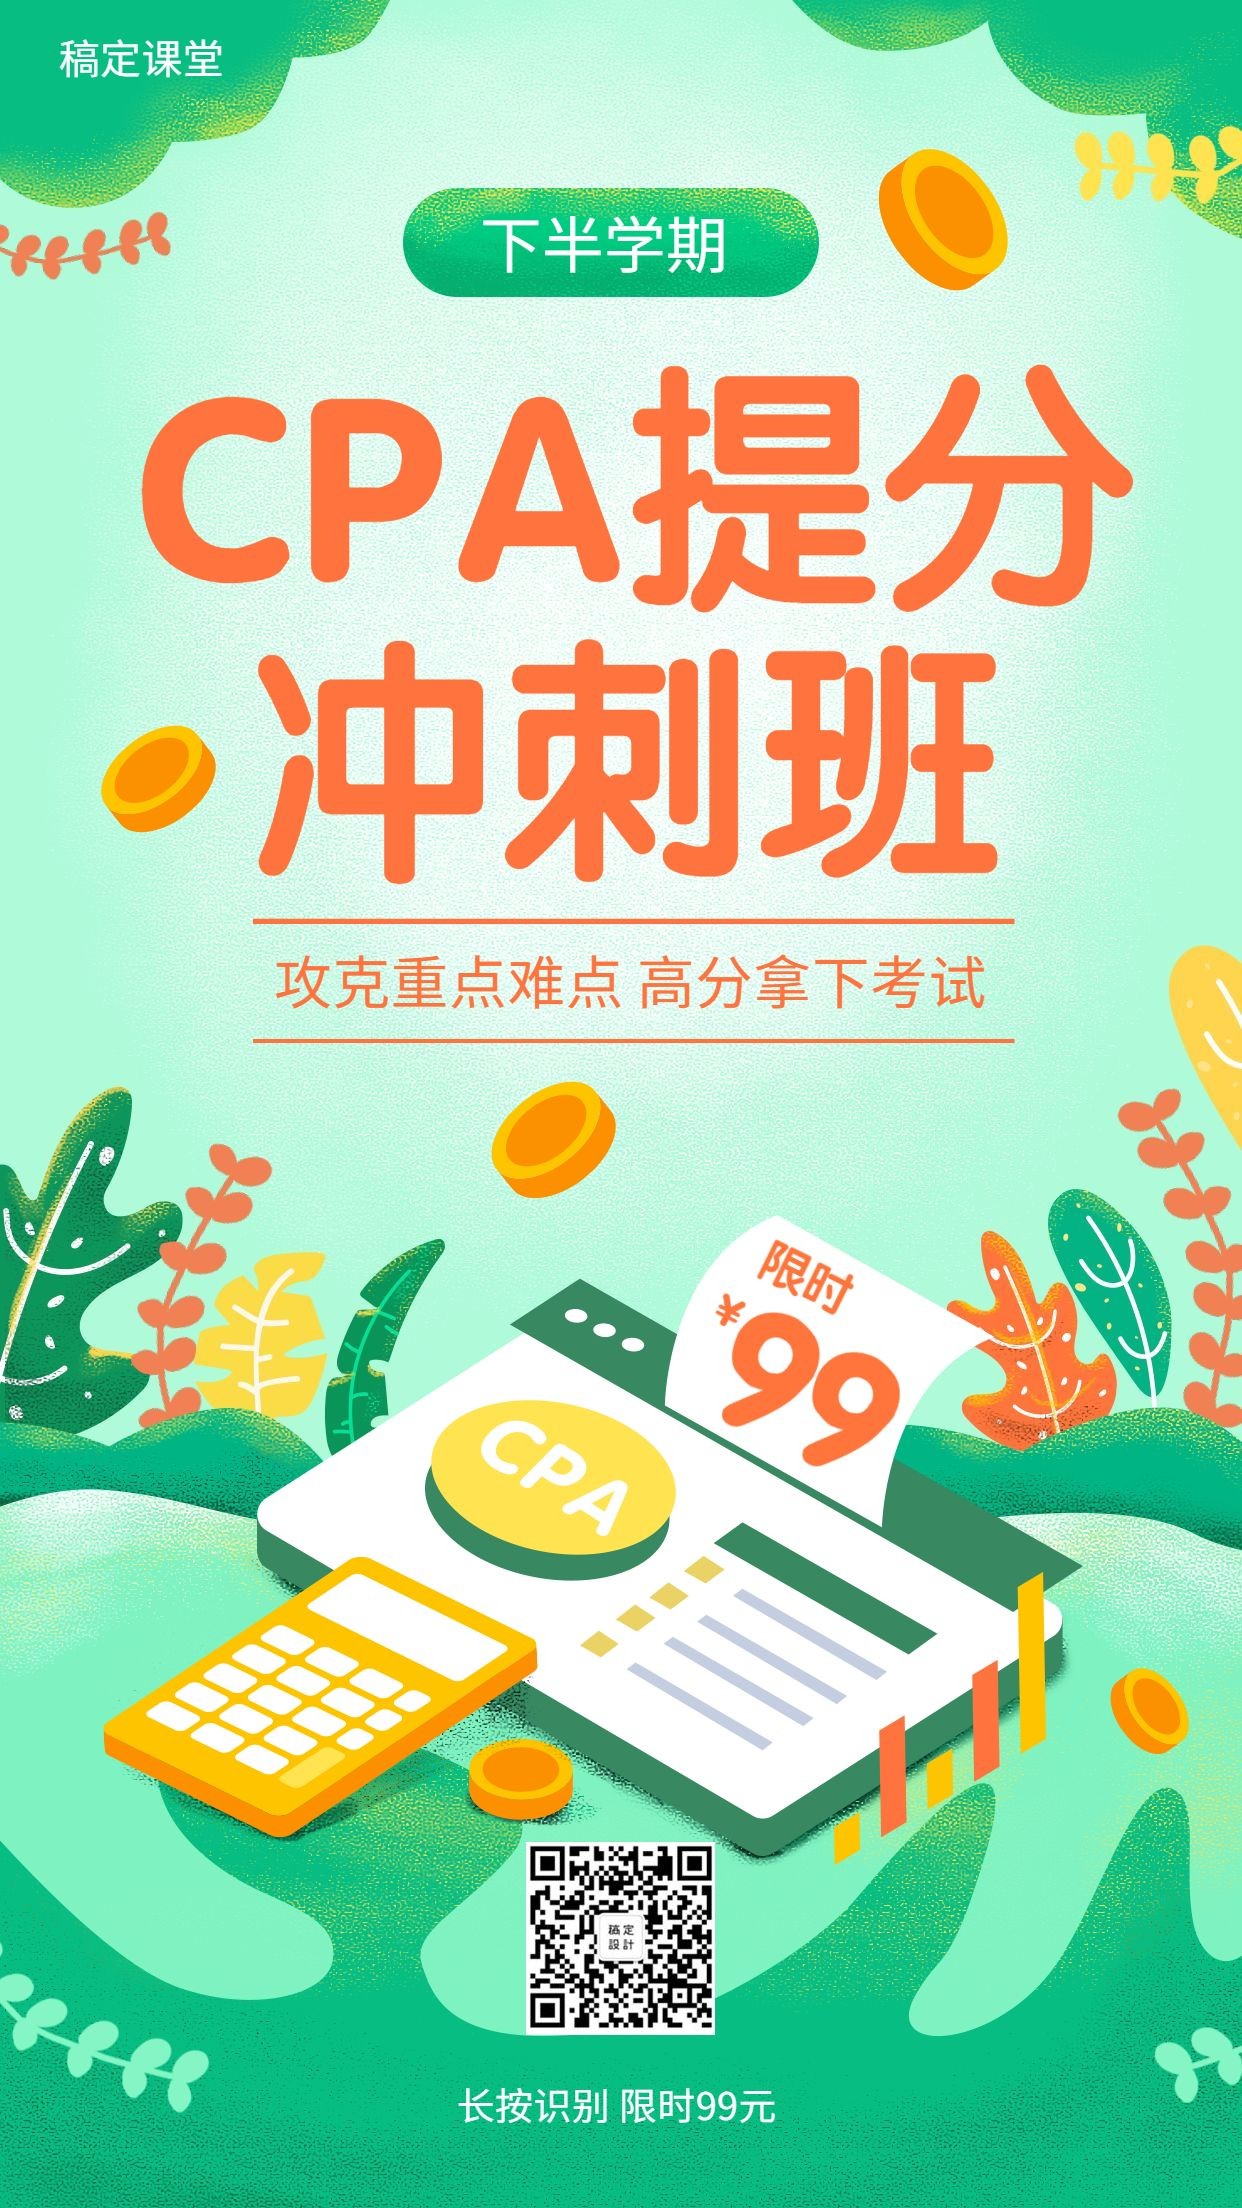 CPA注会考试课程招生手机海报